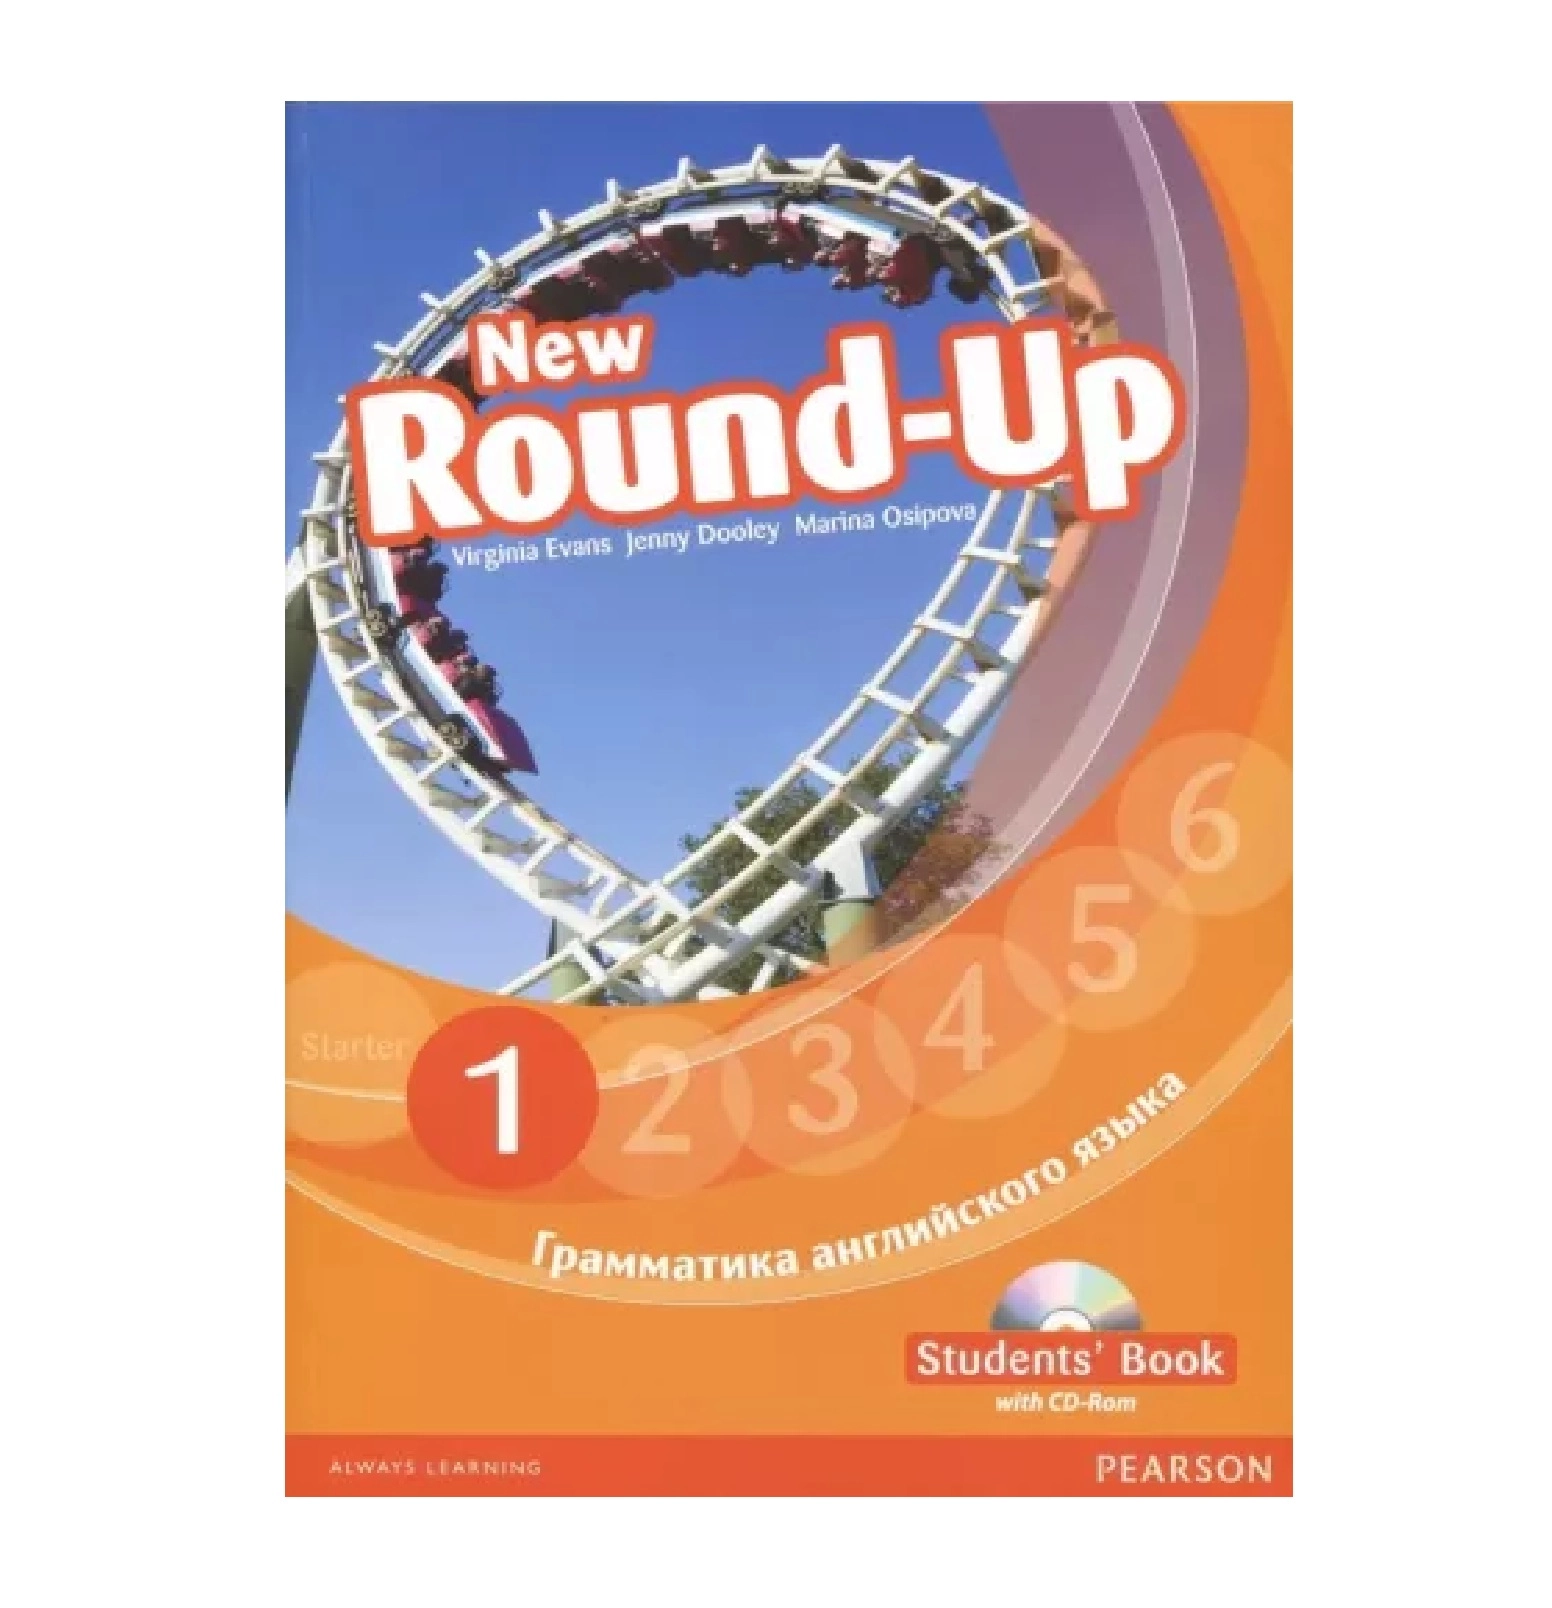 Round up 1 2. Round up 1 Virginia Evans. Английский New Round up Starter. Round up 1 students book грамматика английского языка. New Round up 6.